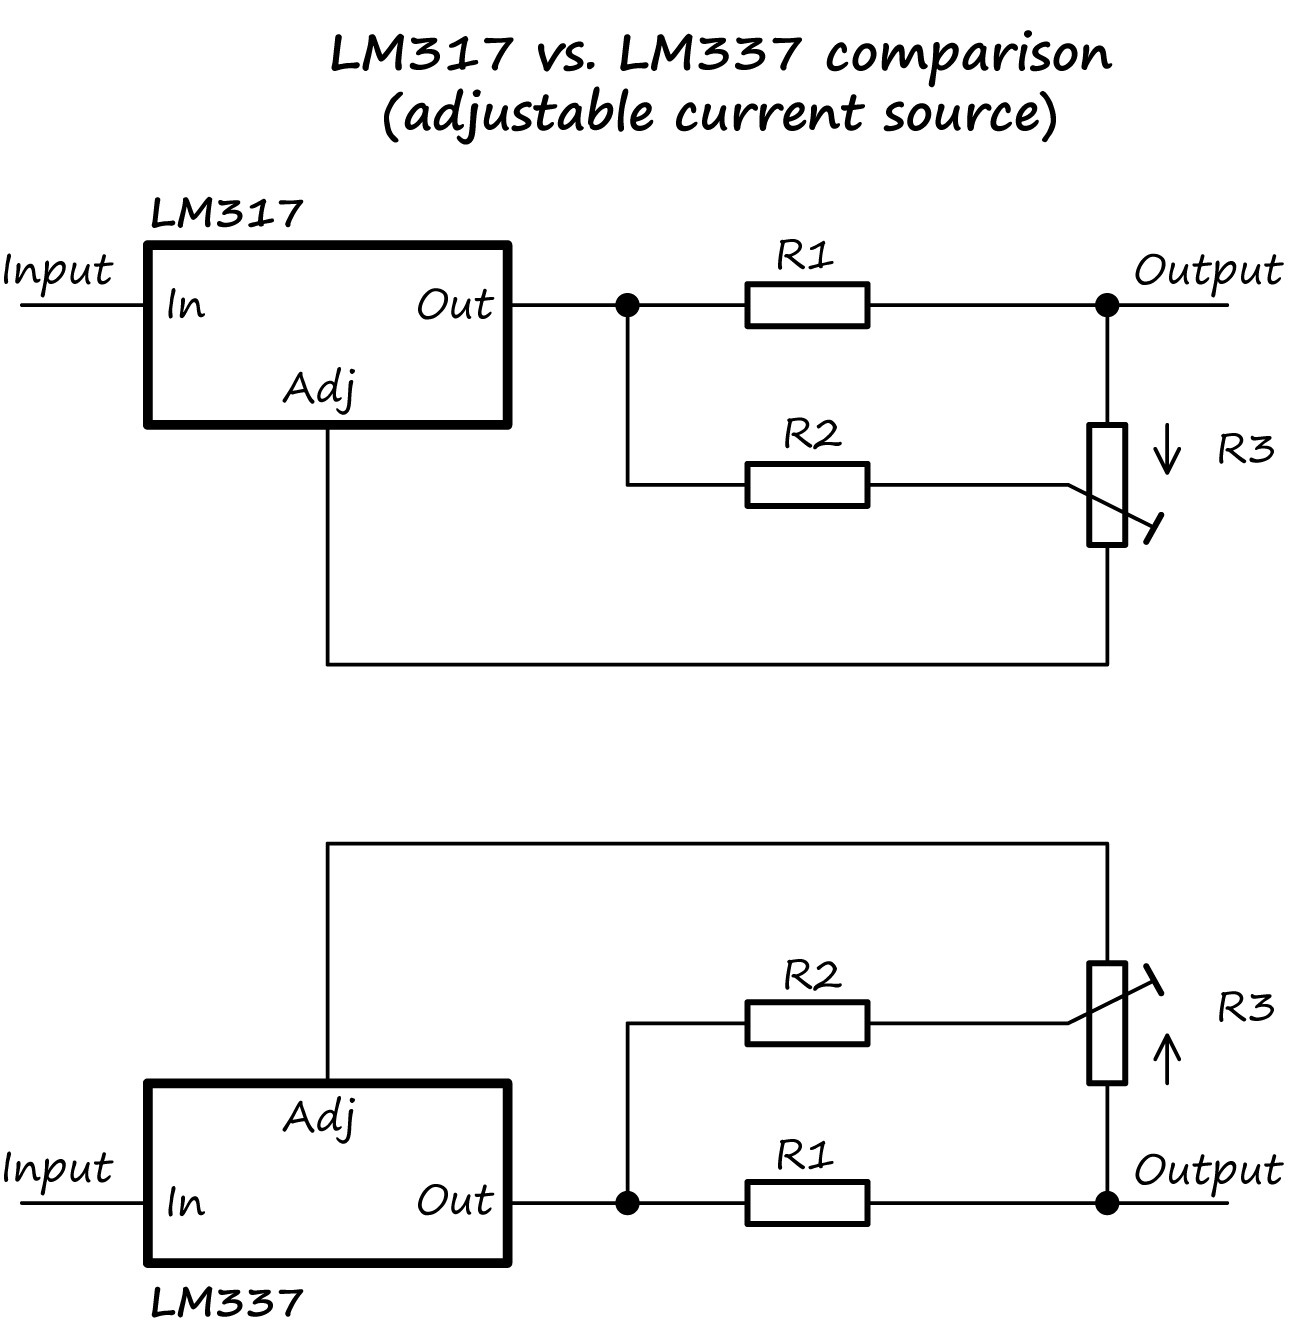 LM317 adjustable current source/regulator